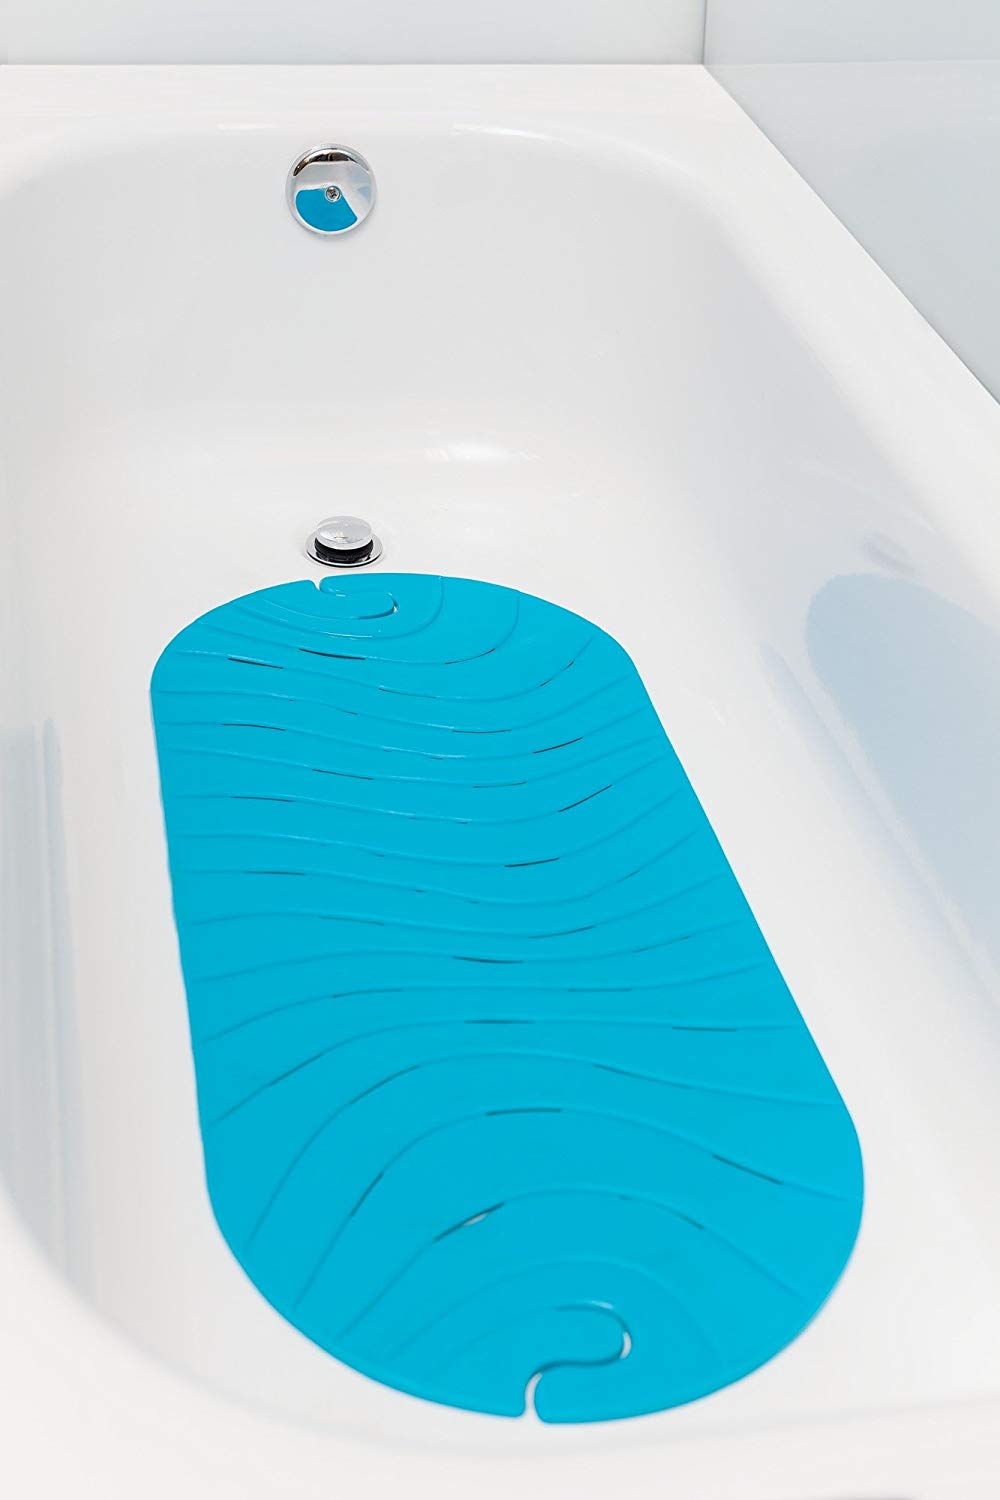 Bathtub mats prevent slipping